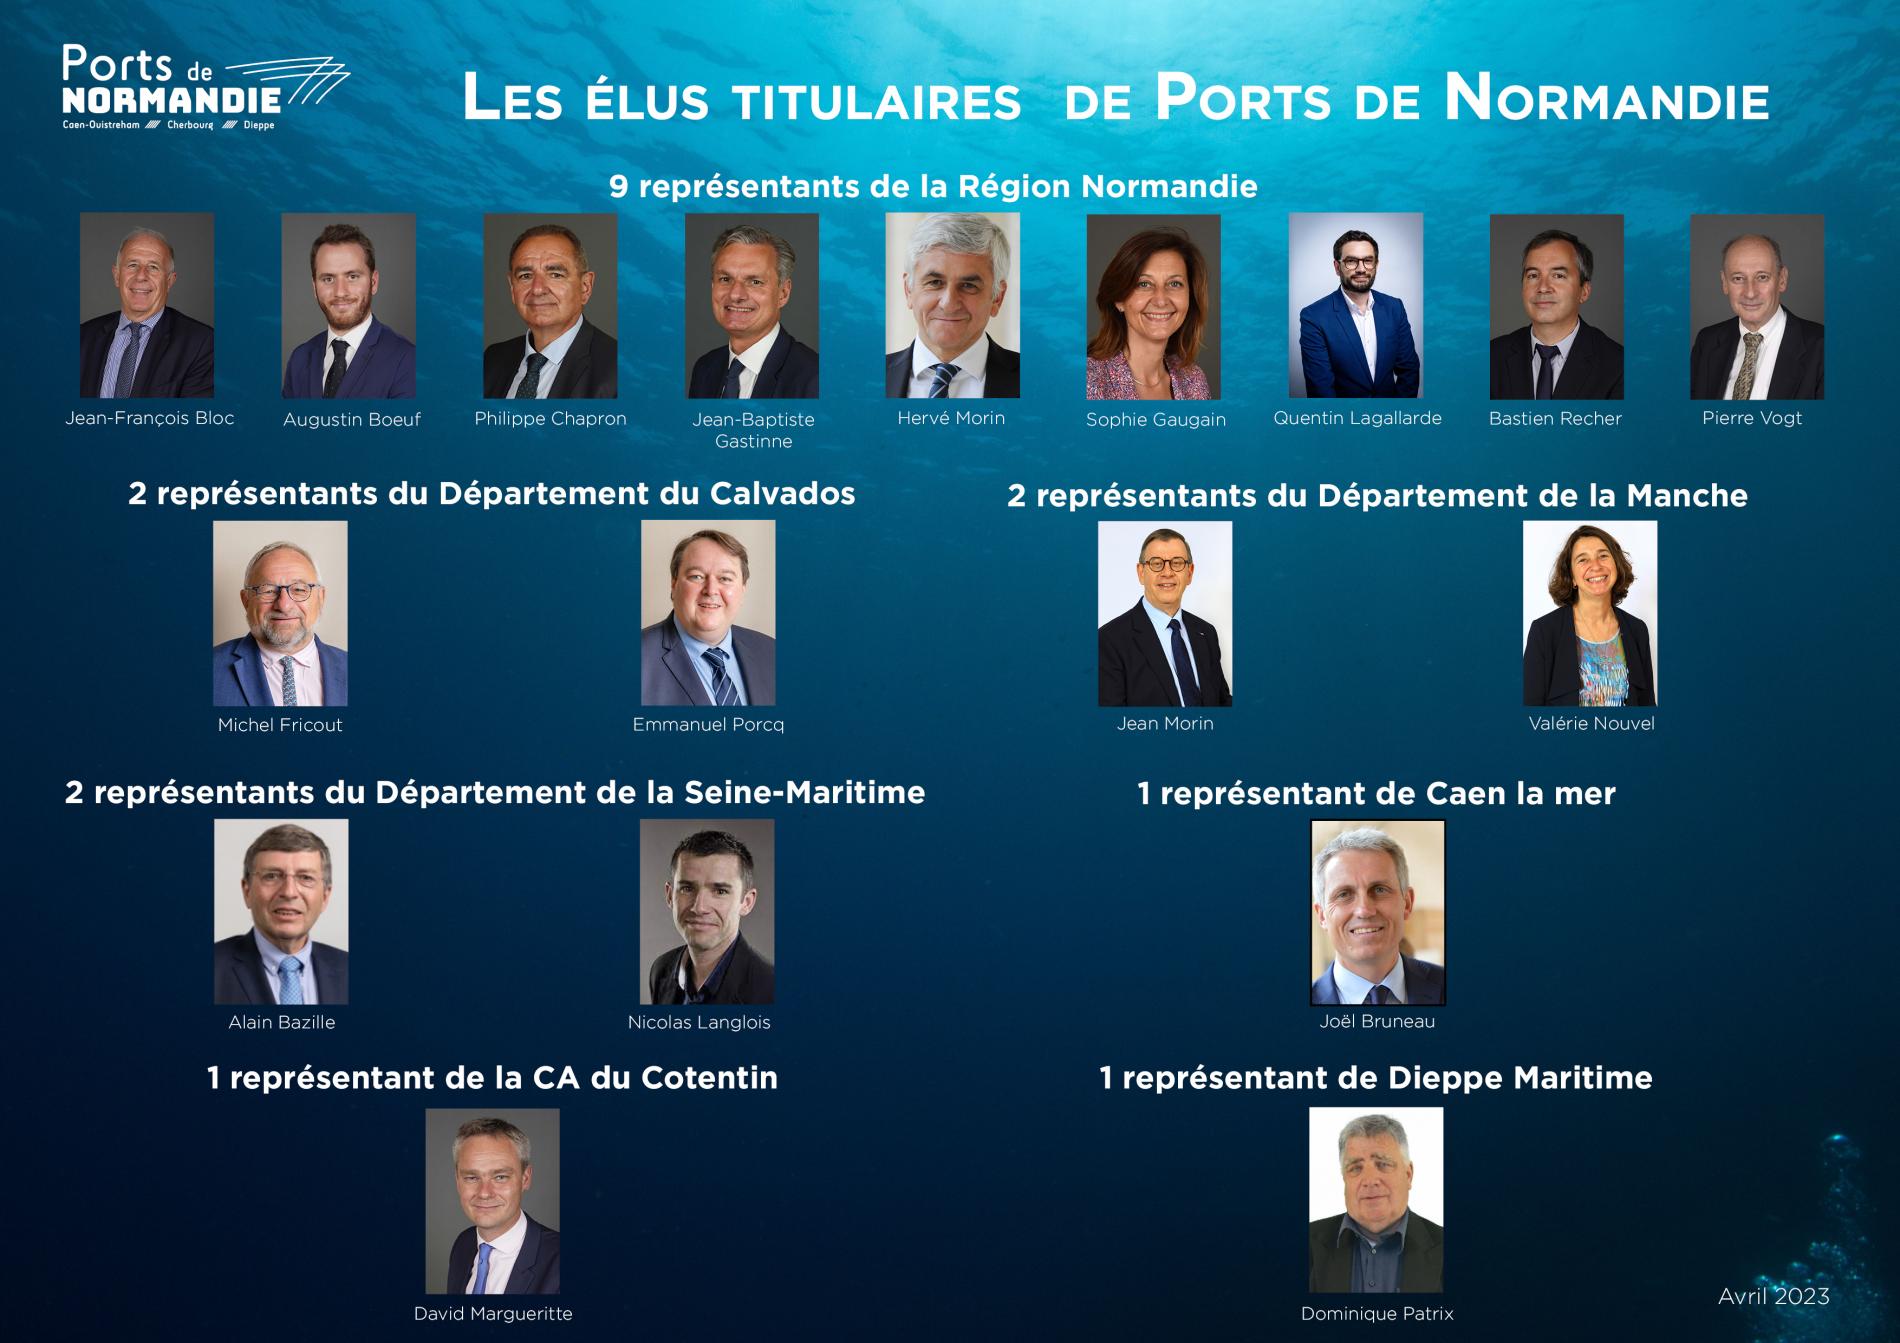 Les élus titulaires de Ports de Normandie